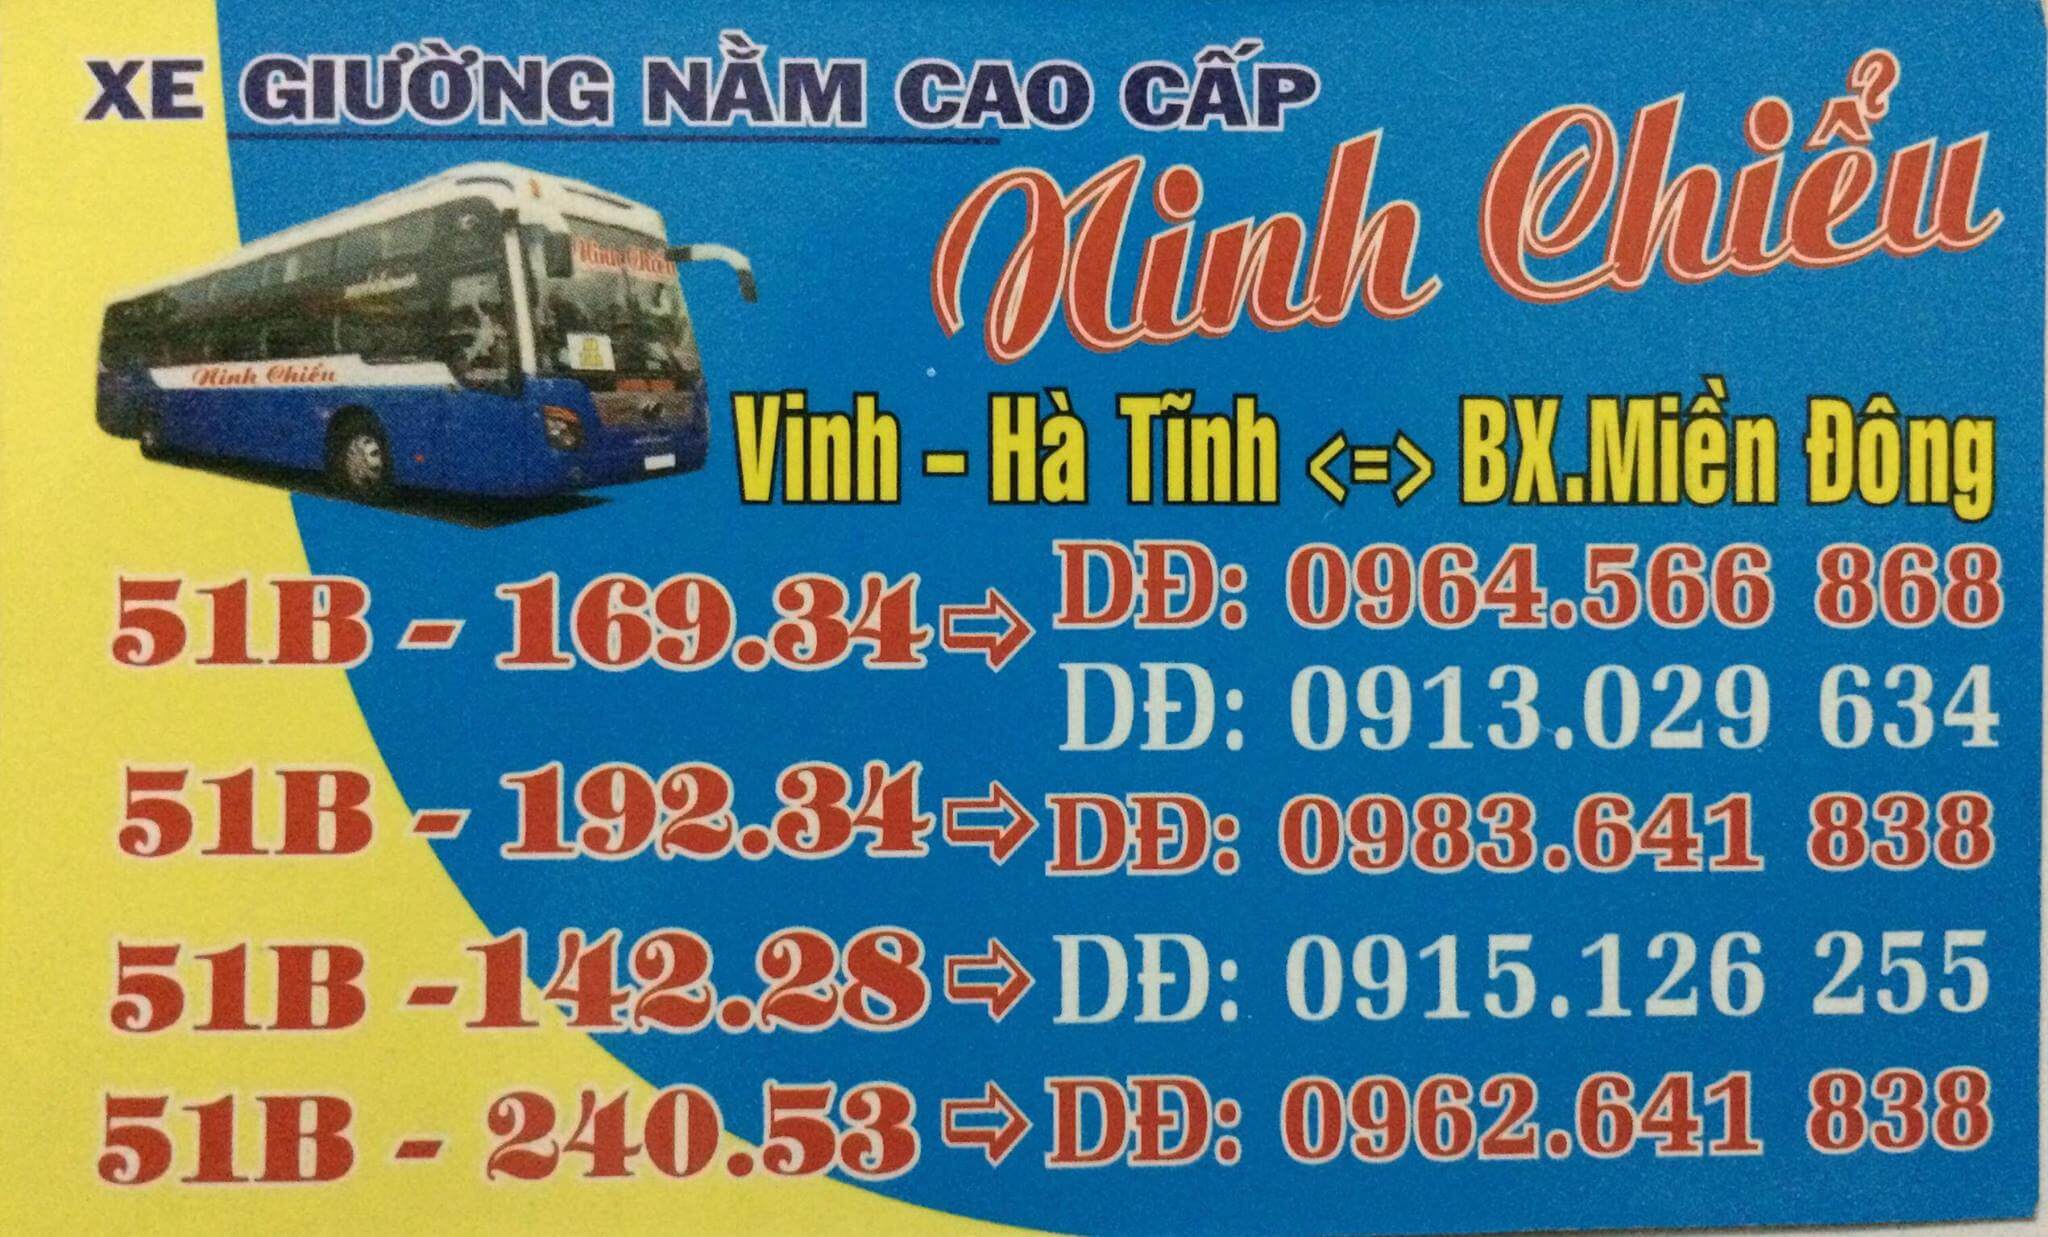 Hệ thống hoạt động nhà xe Ninh Chiểu